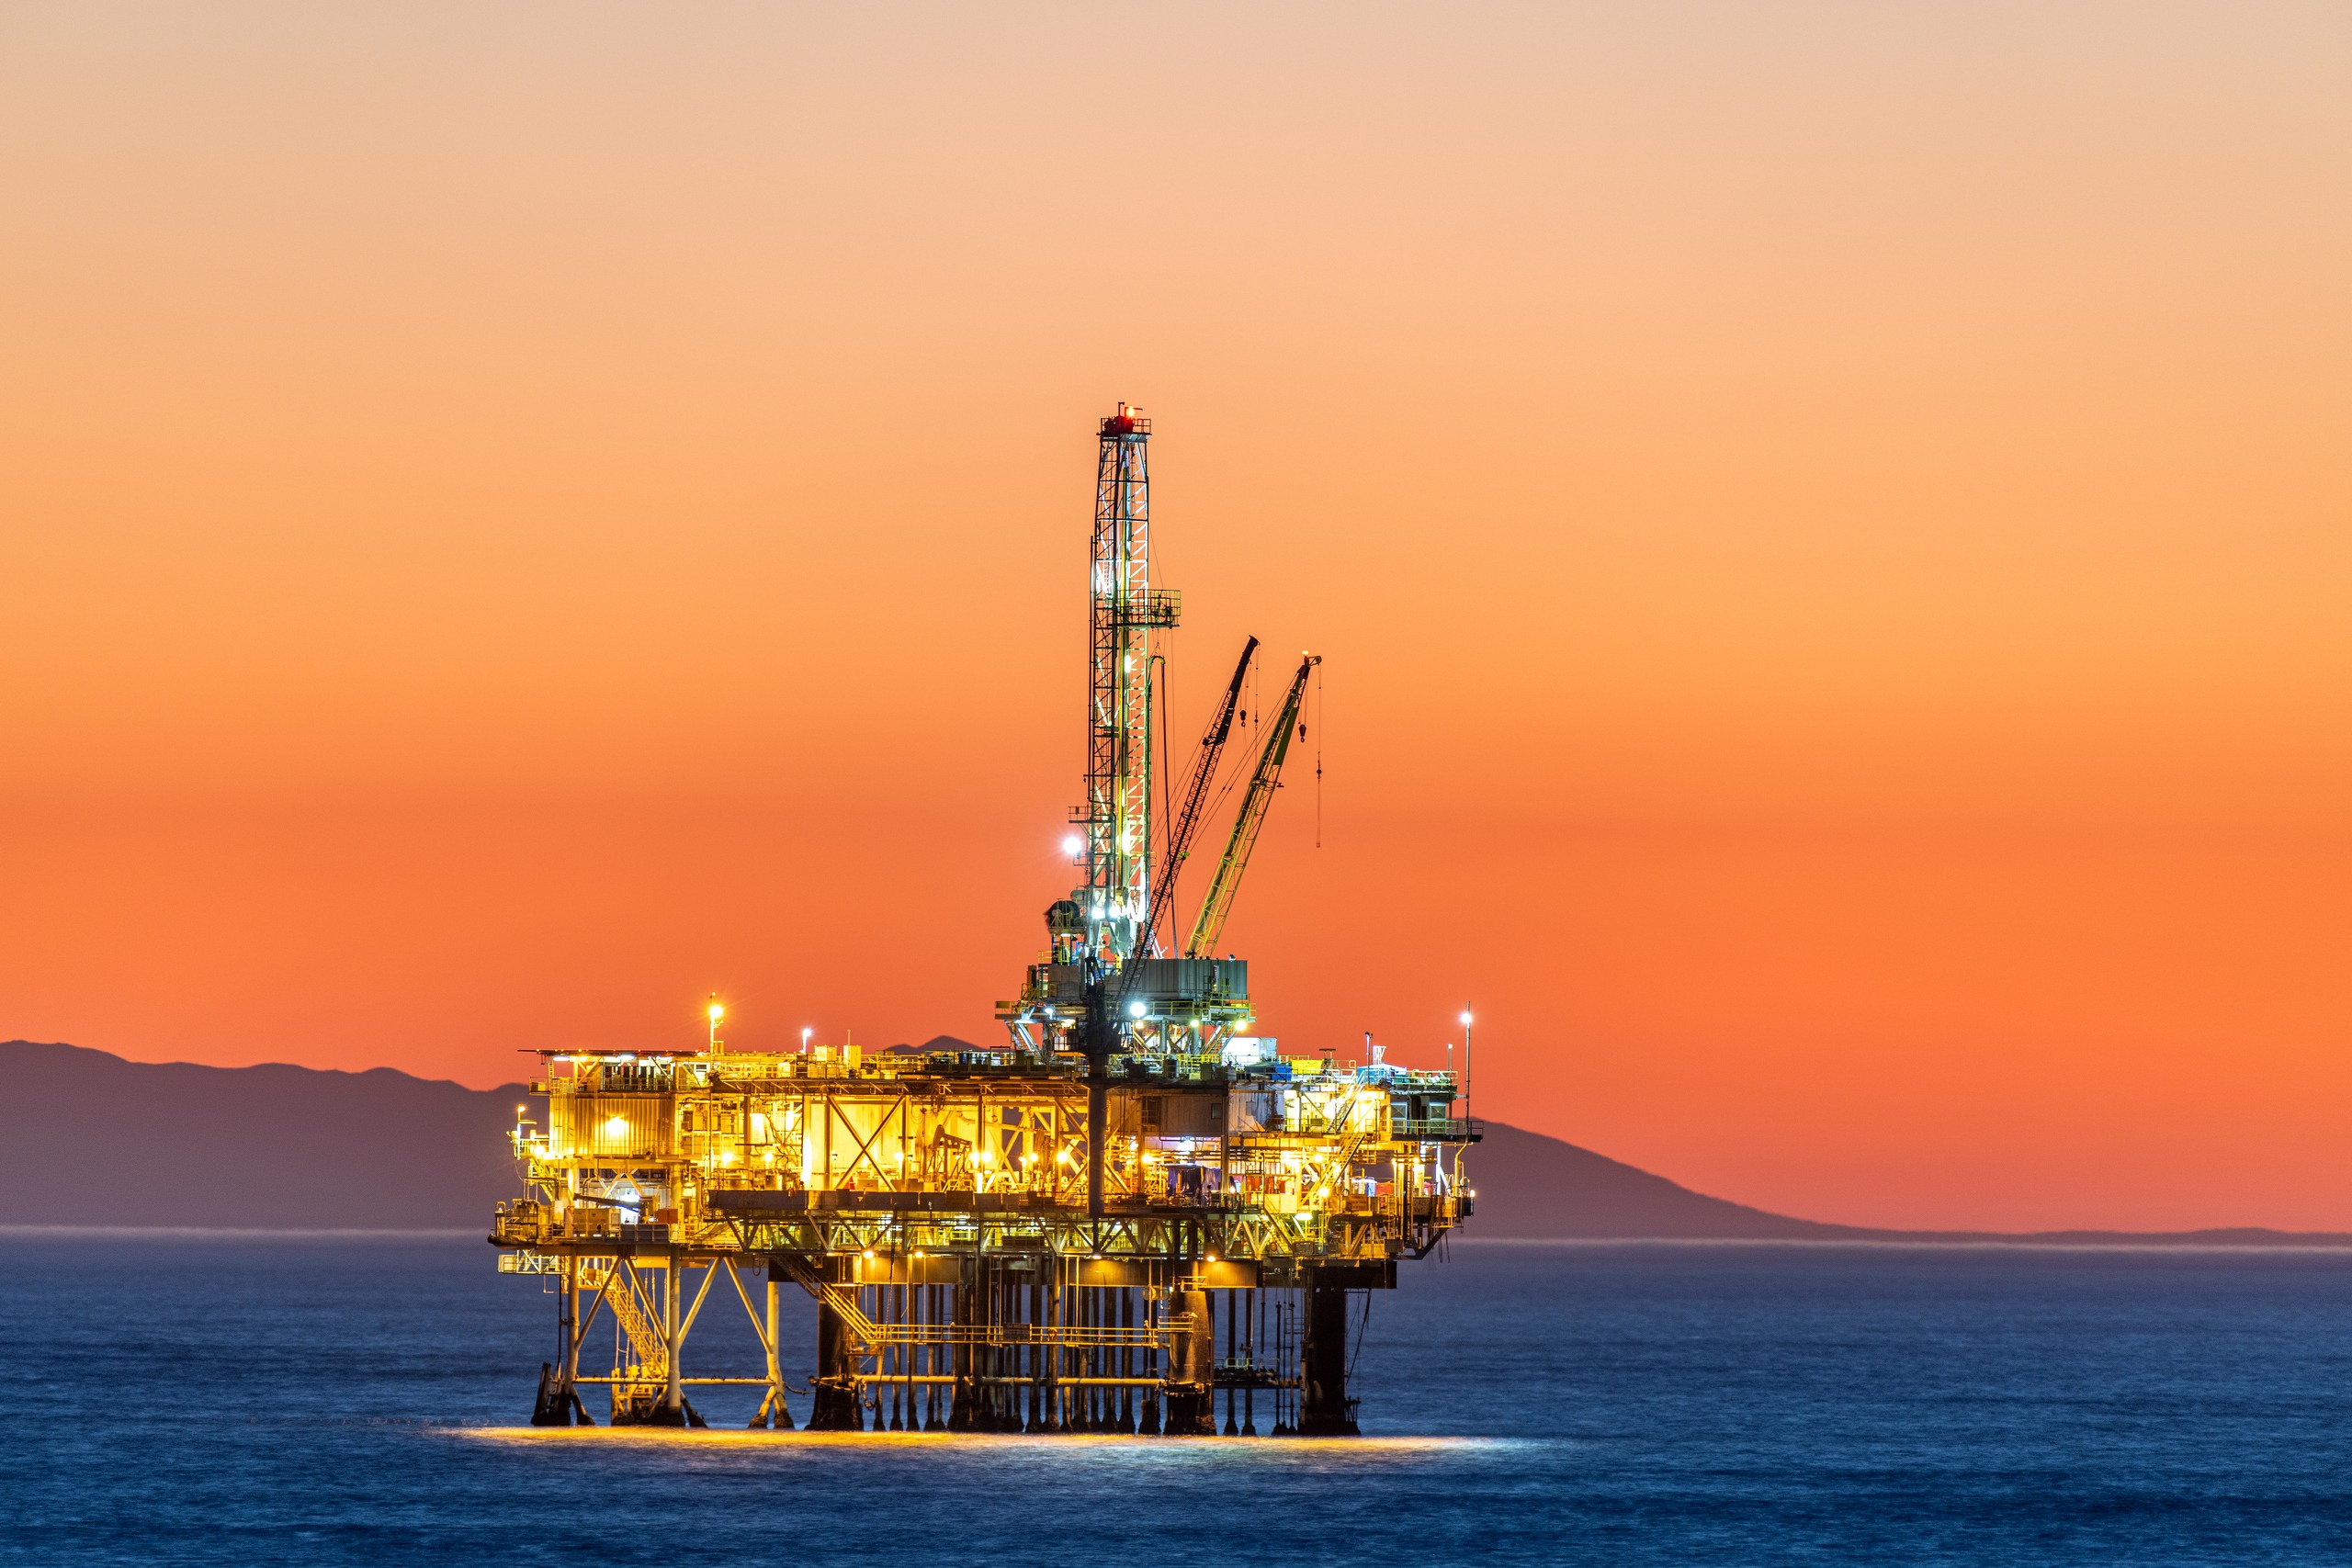 Offshore oil platform at dusk